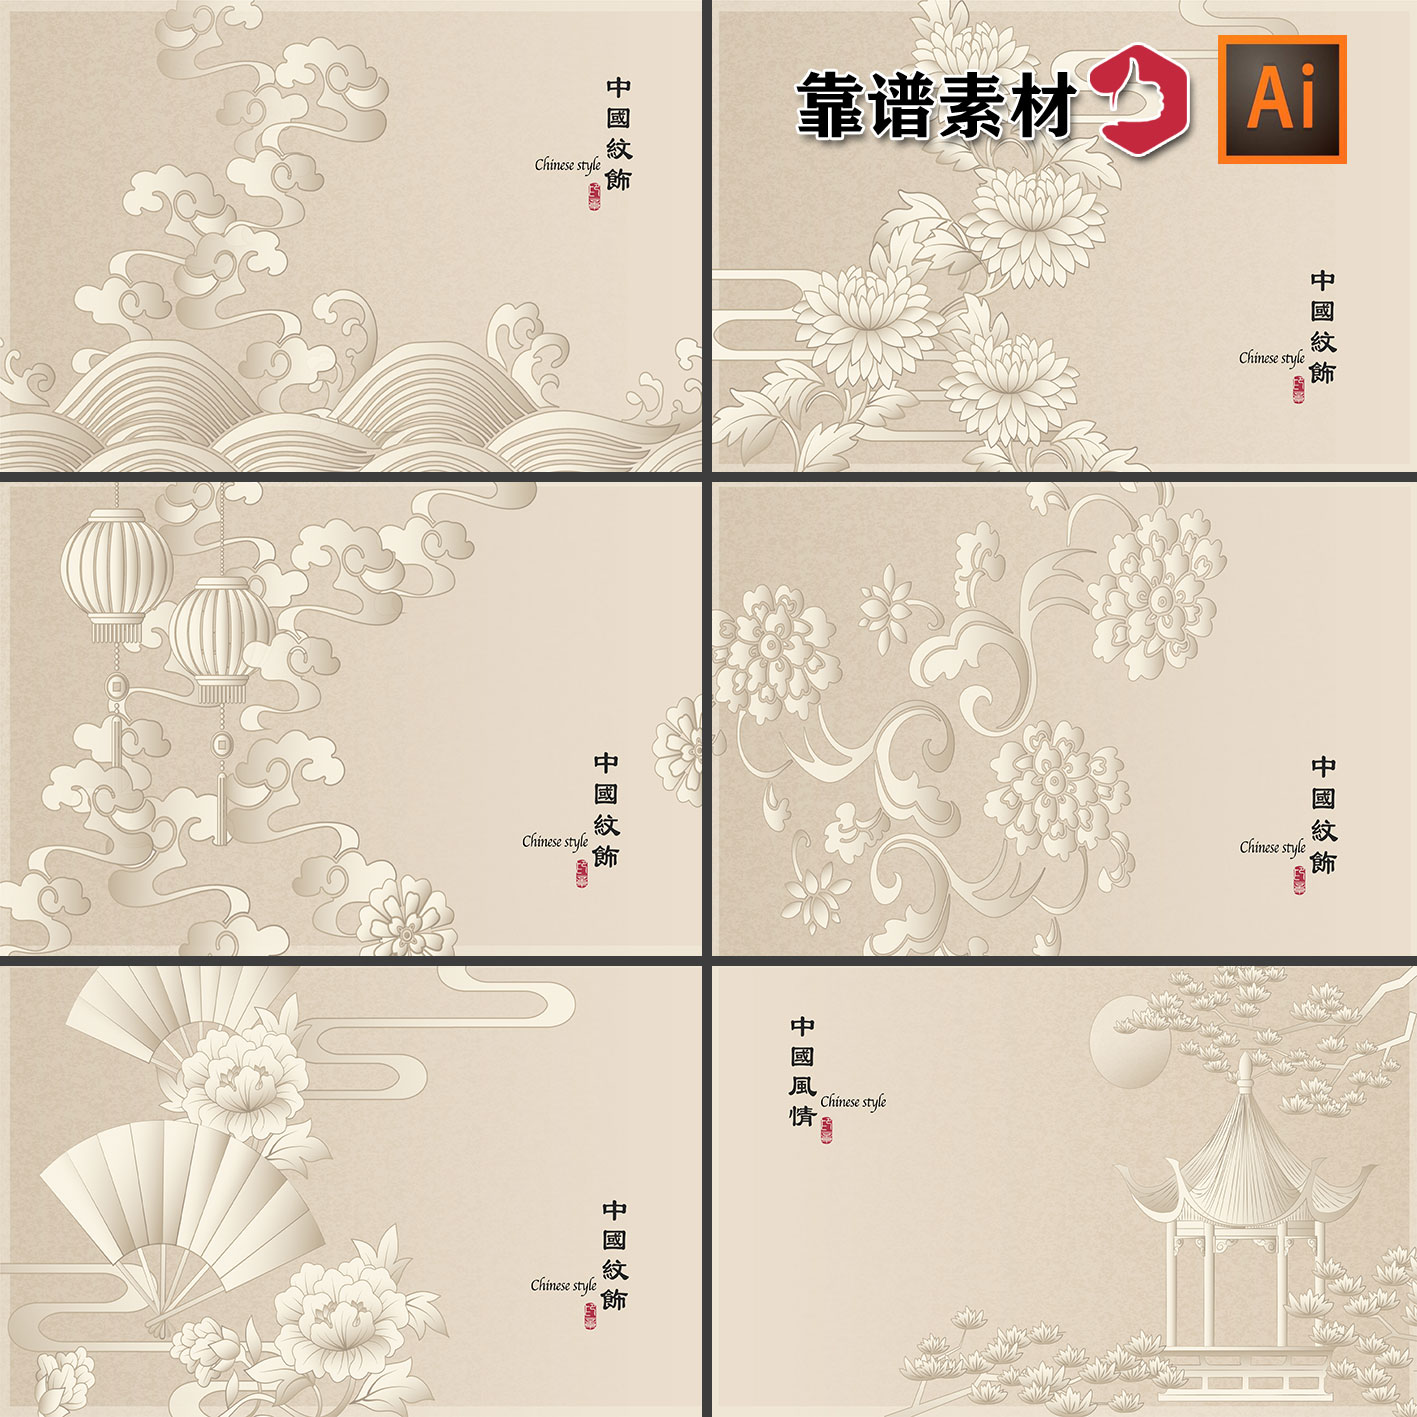 中国传统纹样 云纹